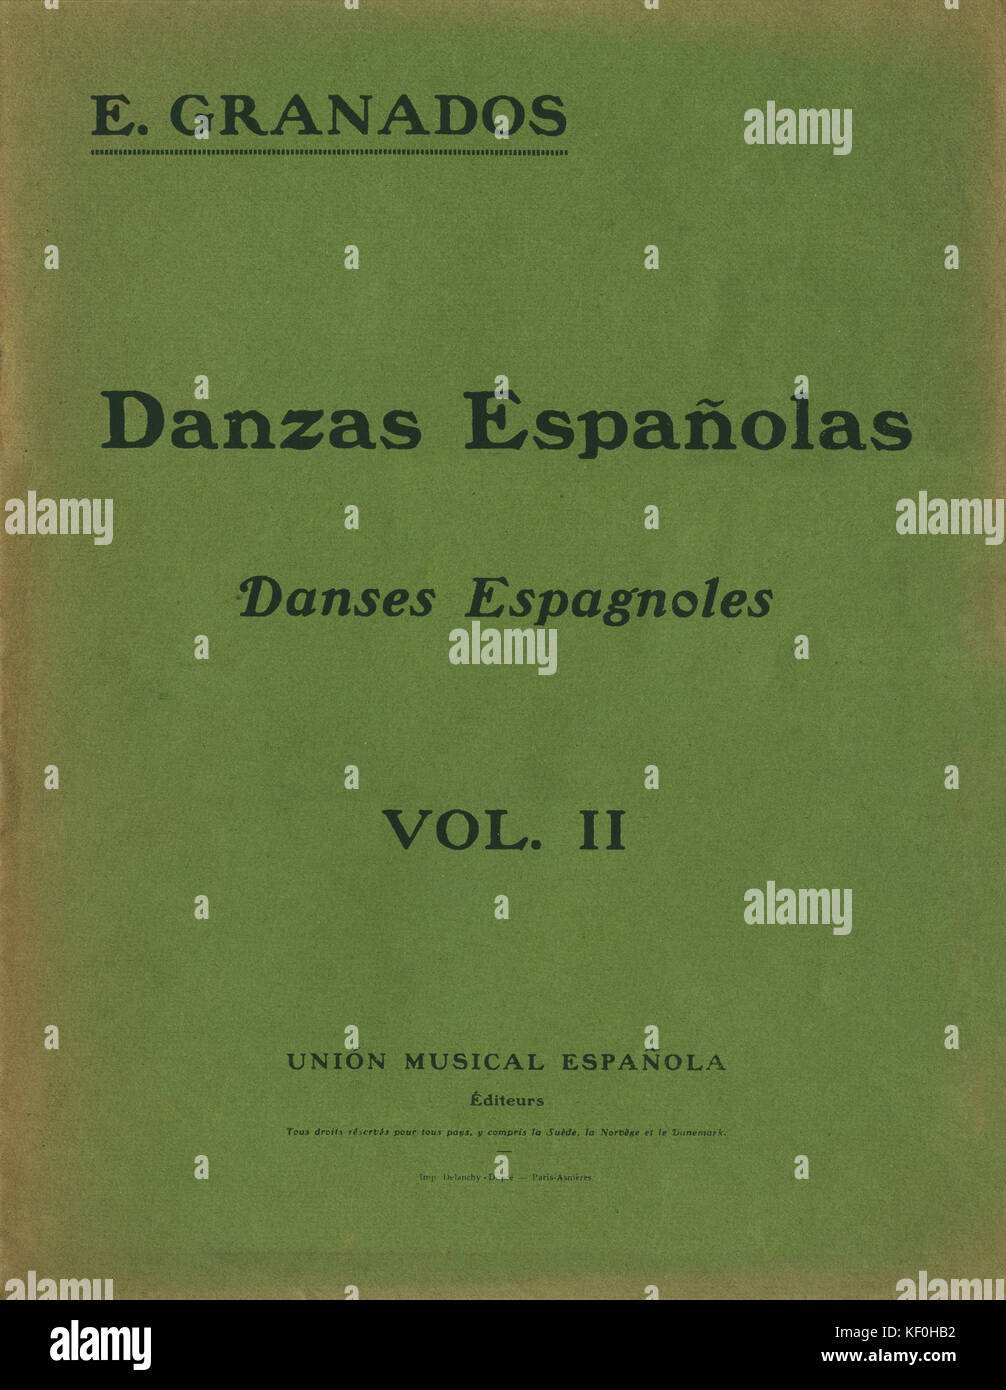 Enrique Granados "Danzas Espanolas/Danses Espagnoles" - Abdeckung für Vol. II. Durch die Union musikalische Espanola veröffentlicht. Der spanische Komponist, 27. Juli 1867 - 24. März 1916 Stockfoto